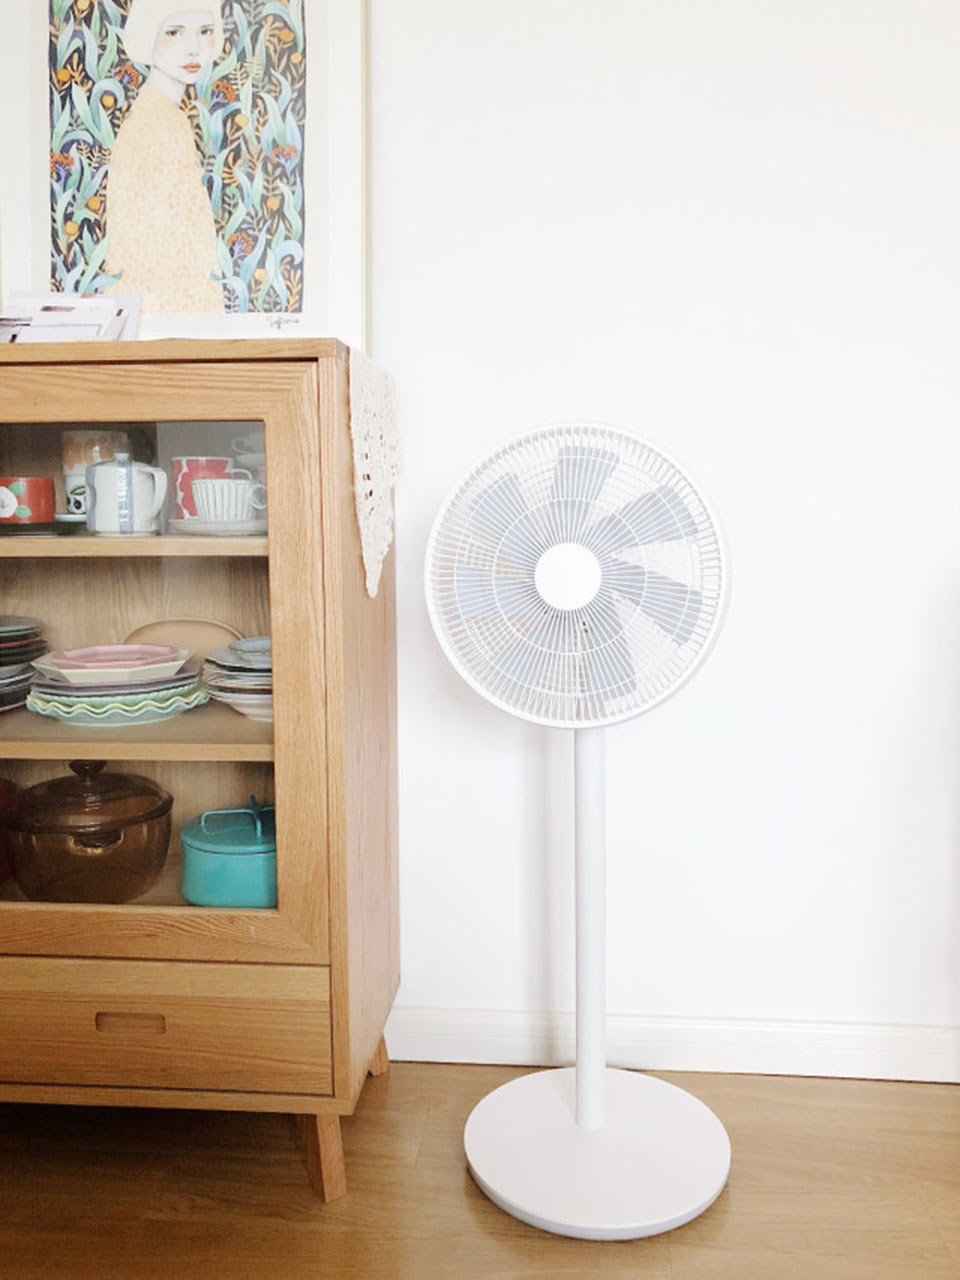 SmartMi ZhiMi DC Electric Fan дуже красивий вентилятор